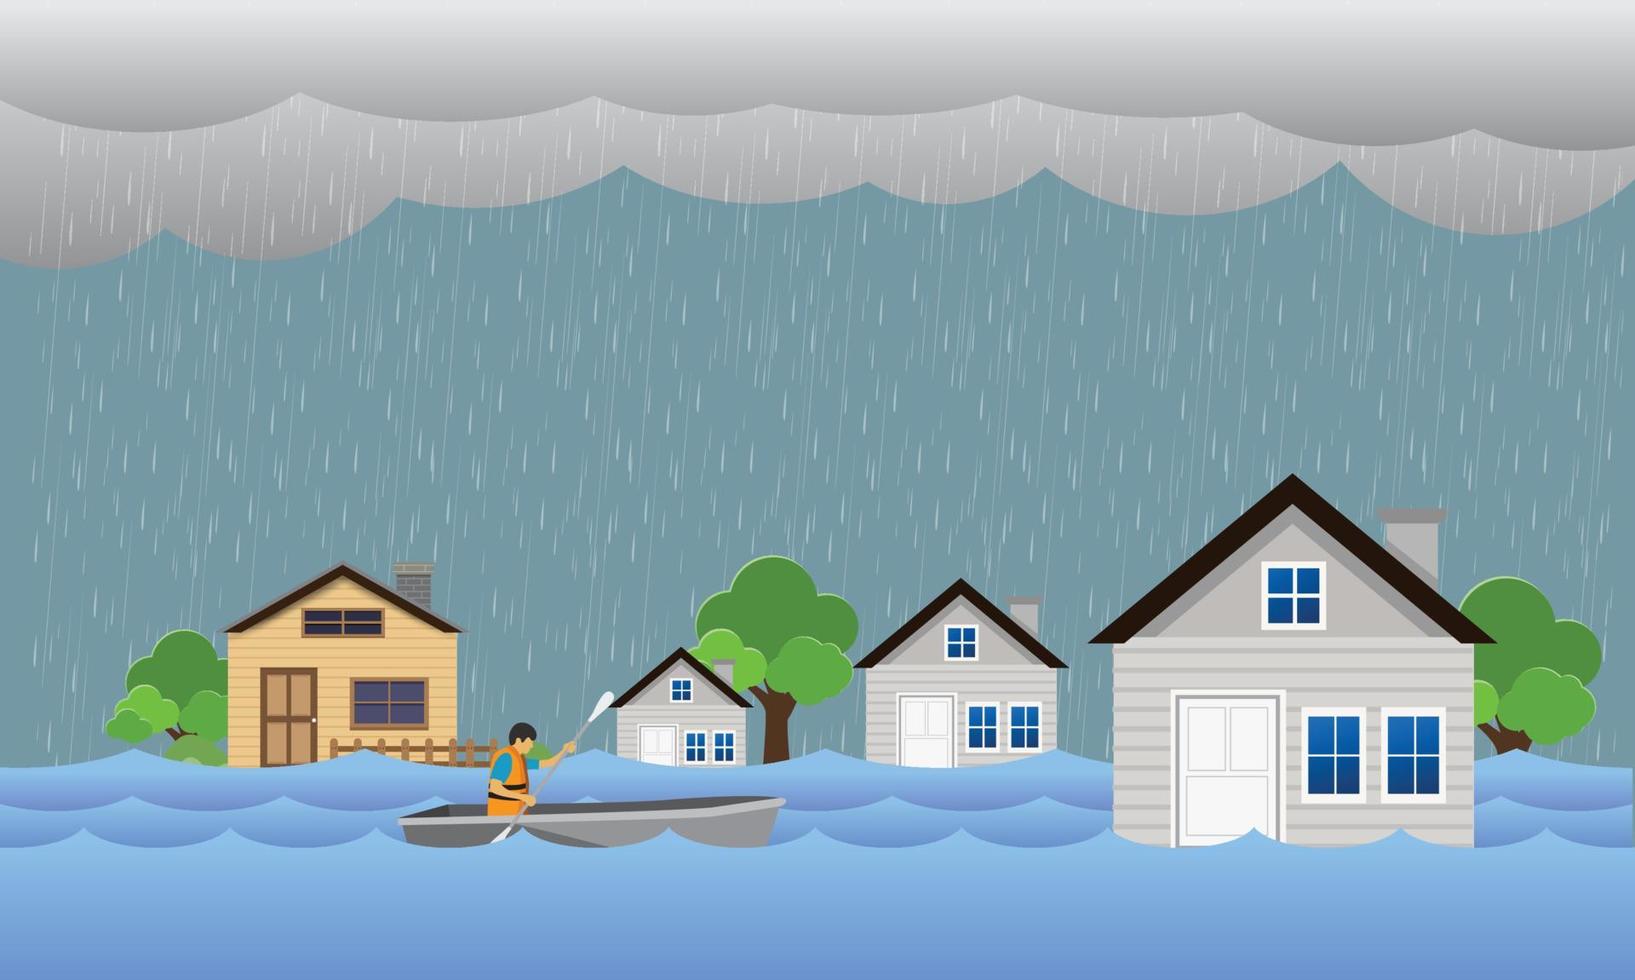 inondation catastrophe naturelle avec maison, fortes pluies et tempêtes, dommages à la maison, inondation d'eau dans la ville vecteur